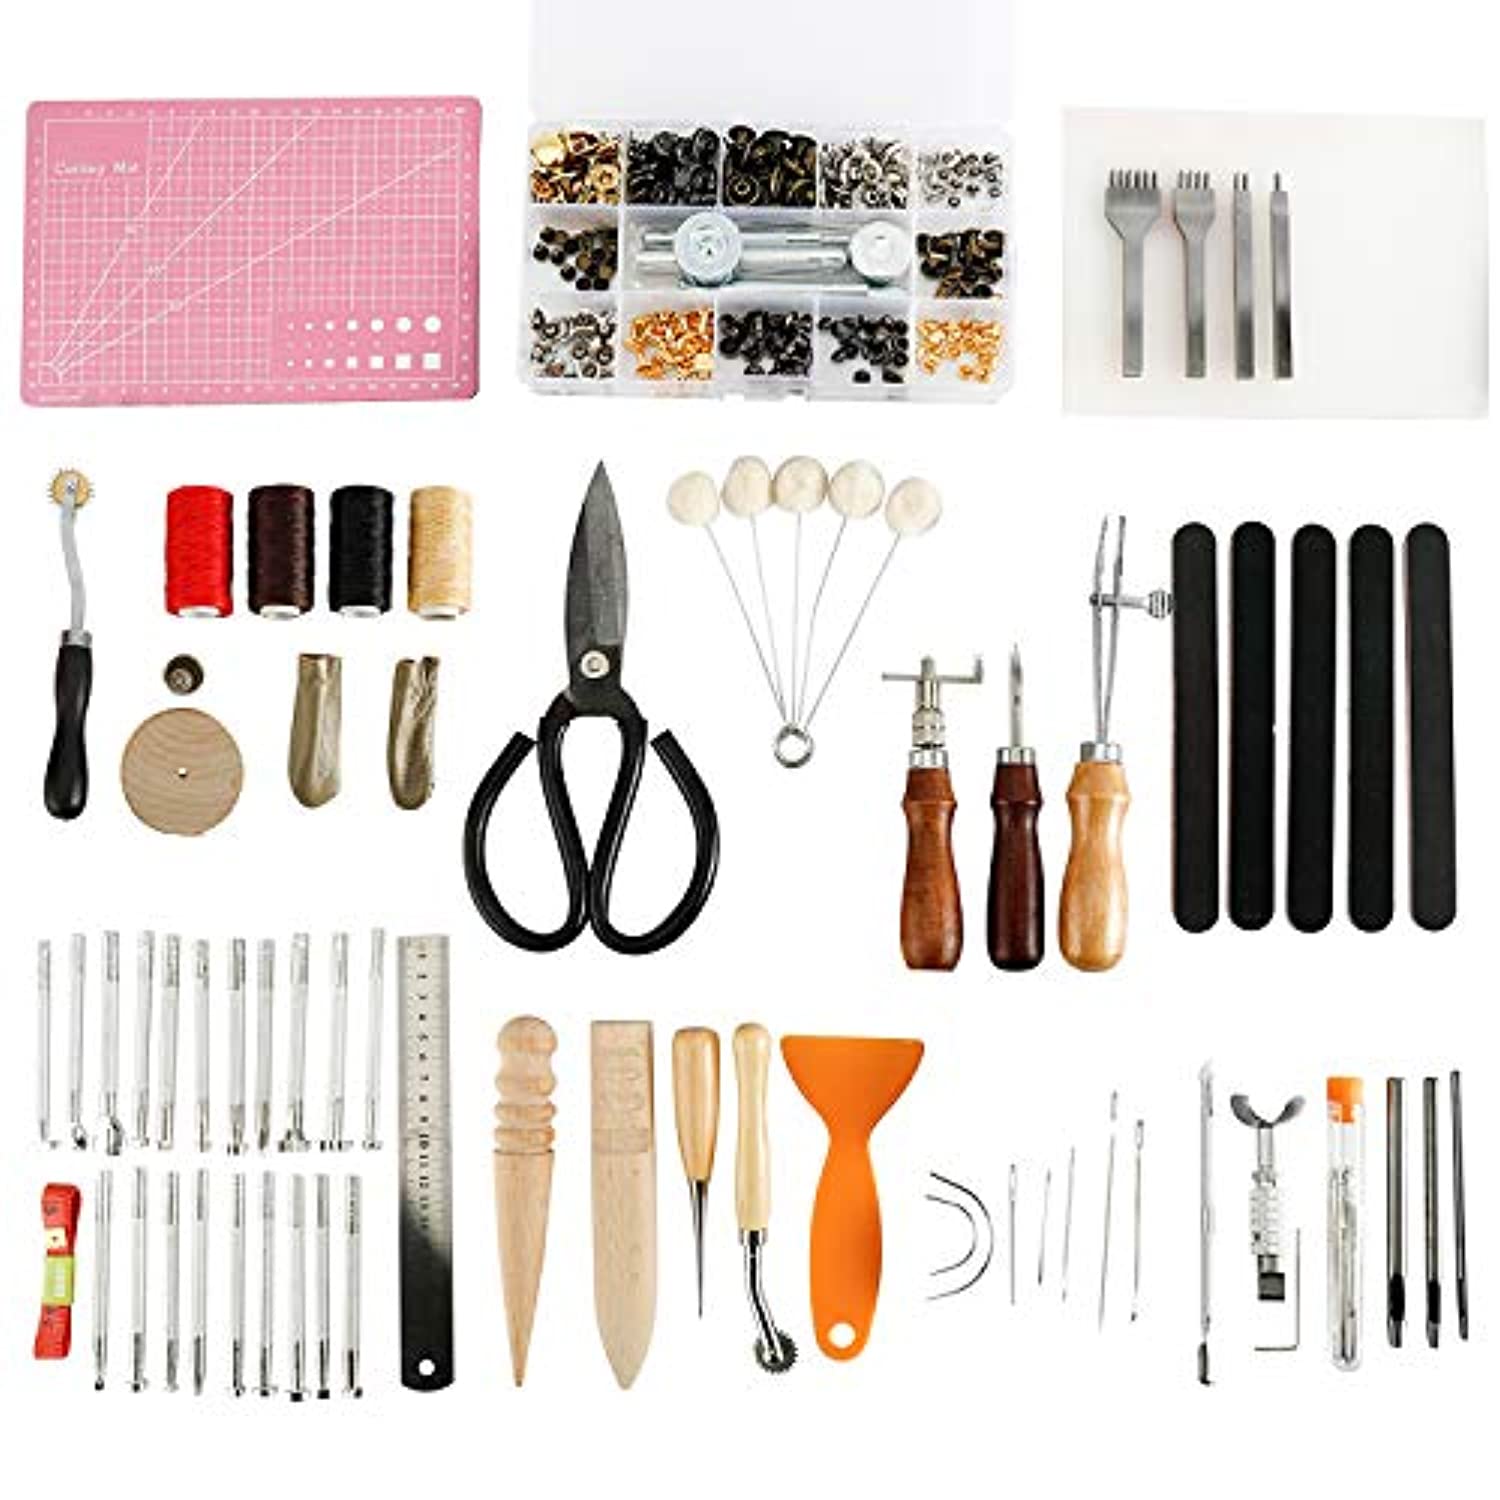 Patioer 183 piezas kit de cuero, kit de herramientas de trabajo de